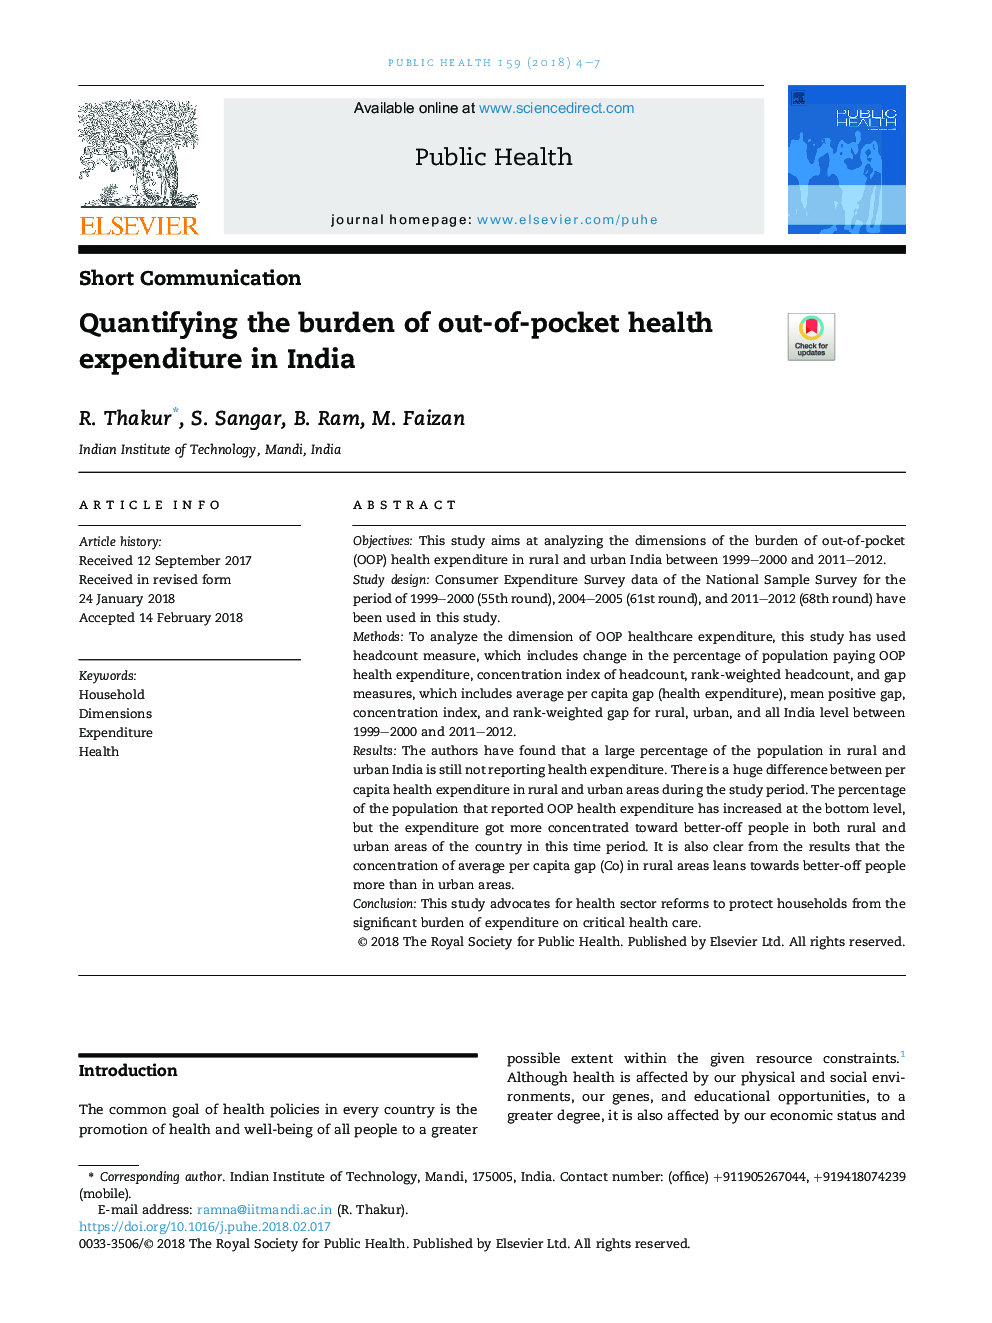 تعیین بار هزینه‌های بهداشتی واقعی در هند